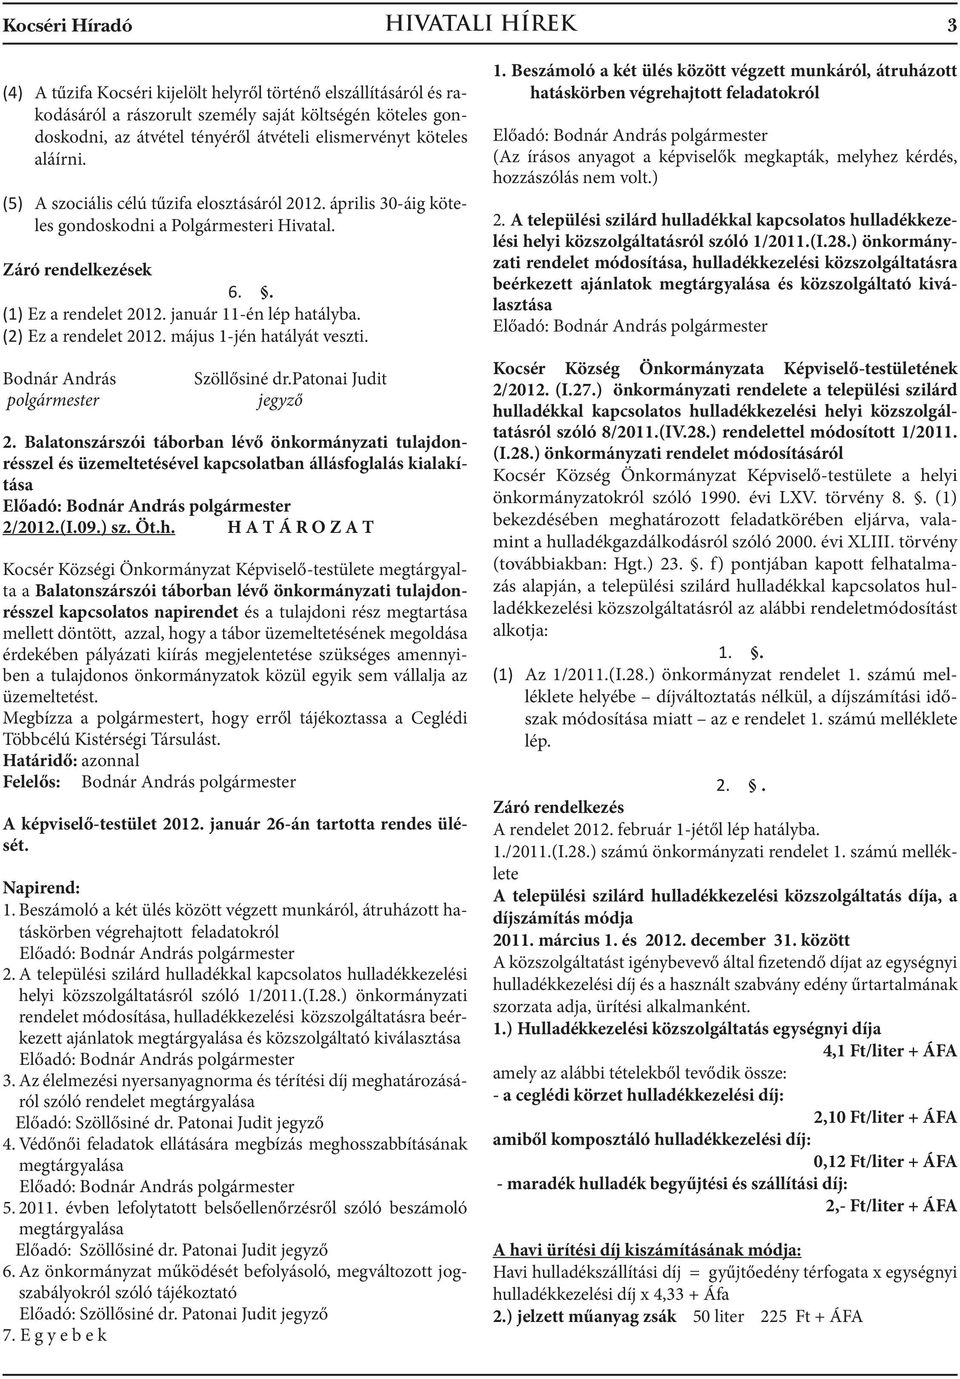 január 11-én lép hatályba. (2) Ez a rendelet 2012. május 1-jén hatályát veszti. Bodnár András polgármester Szöllősiné dr.patonai Judit jegyző 2.